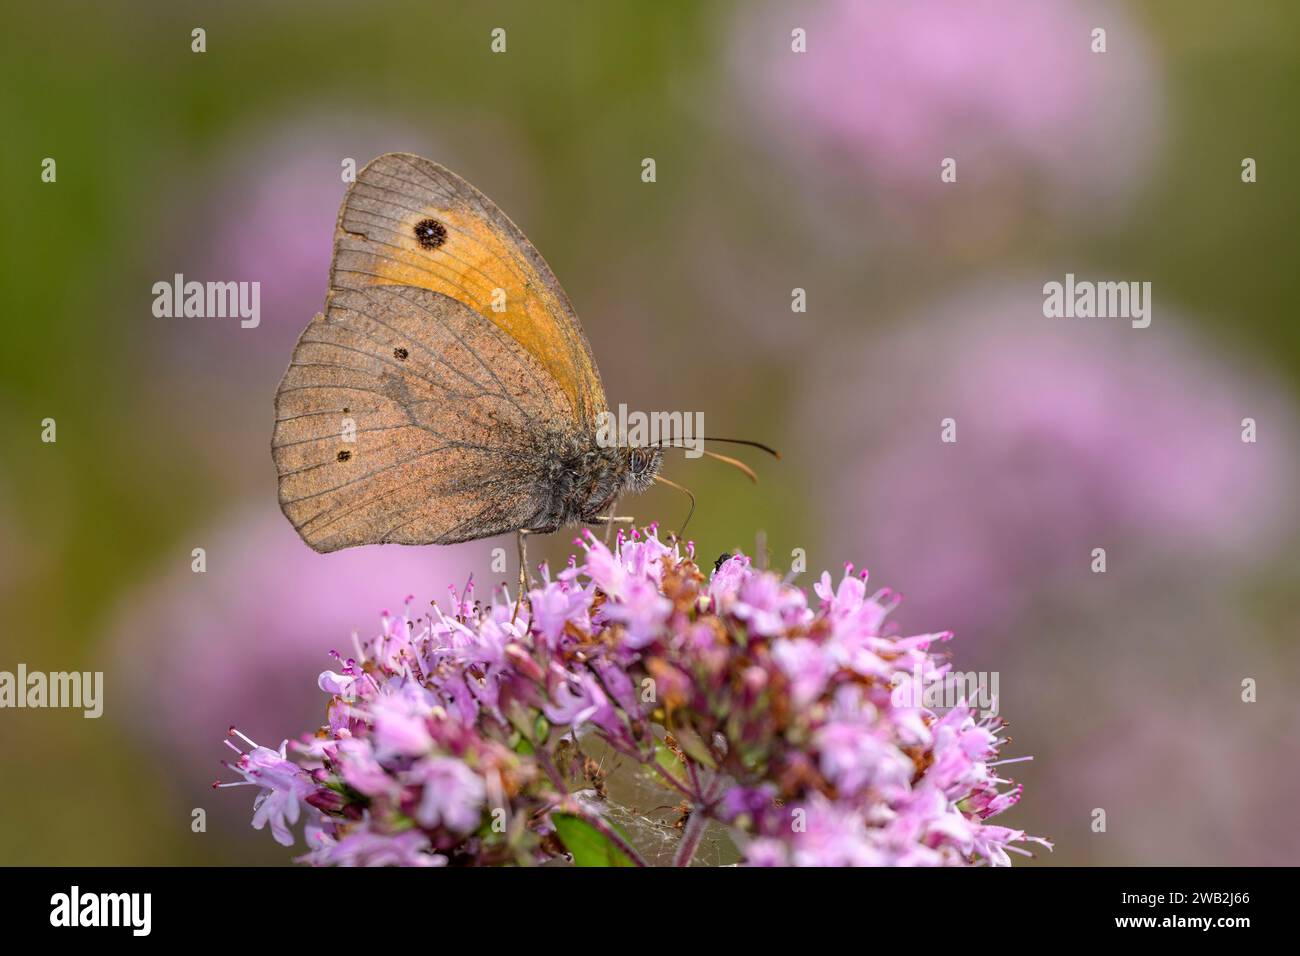 Wiesenbrauner Schmetterling - Maniola jurtina saugt Nektar mit seinem Stamm aus der Blüte von Origanum vulgare - Oregano oder wildem Marjoram Stockfoto